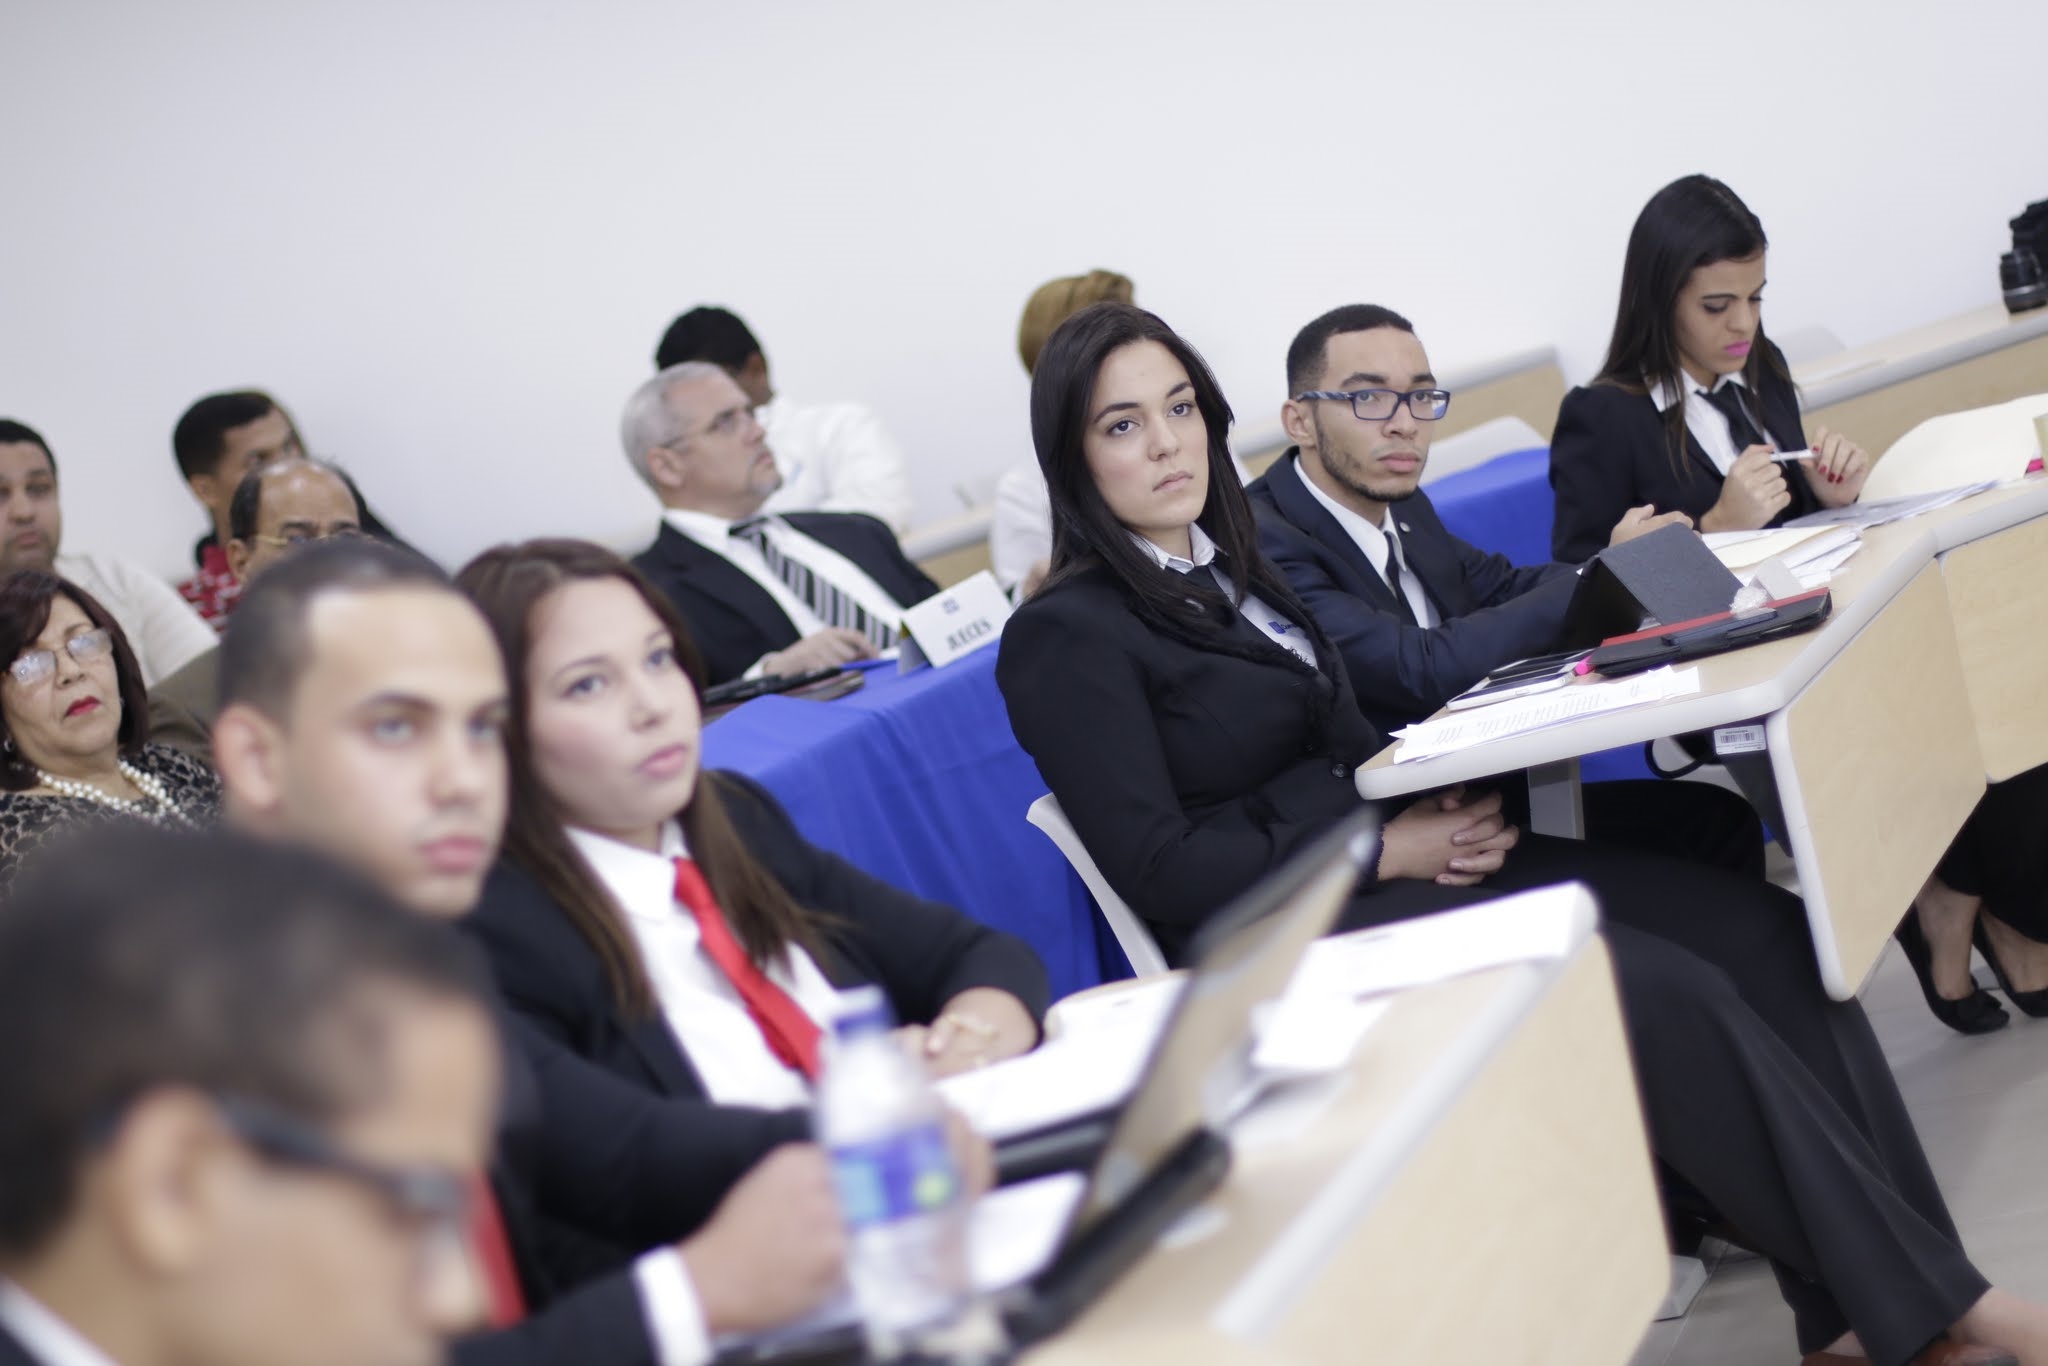 La actividad fue realizada en el Salón de Conferencias, Edif. I del Campus Principal de UNAPEC.